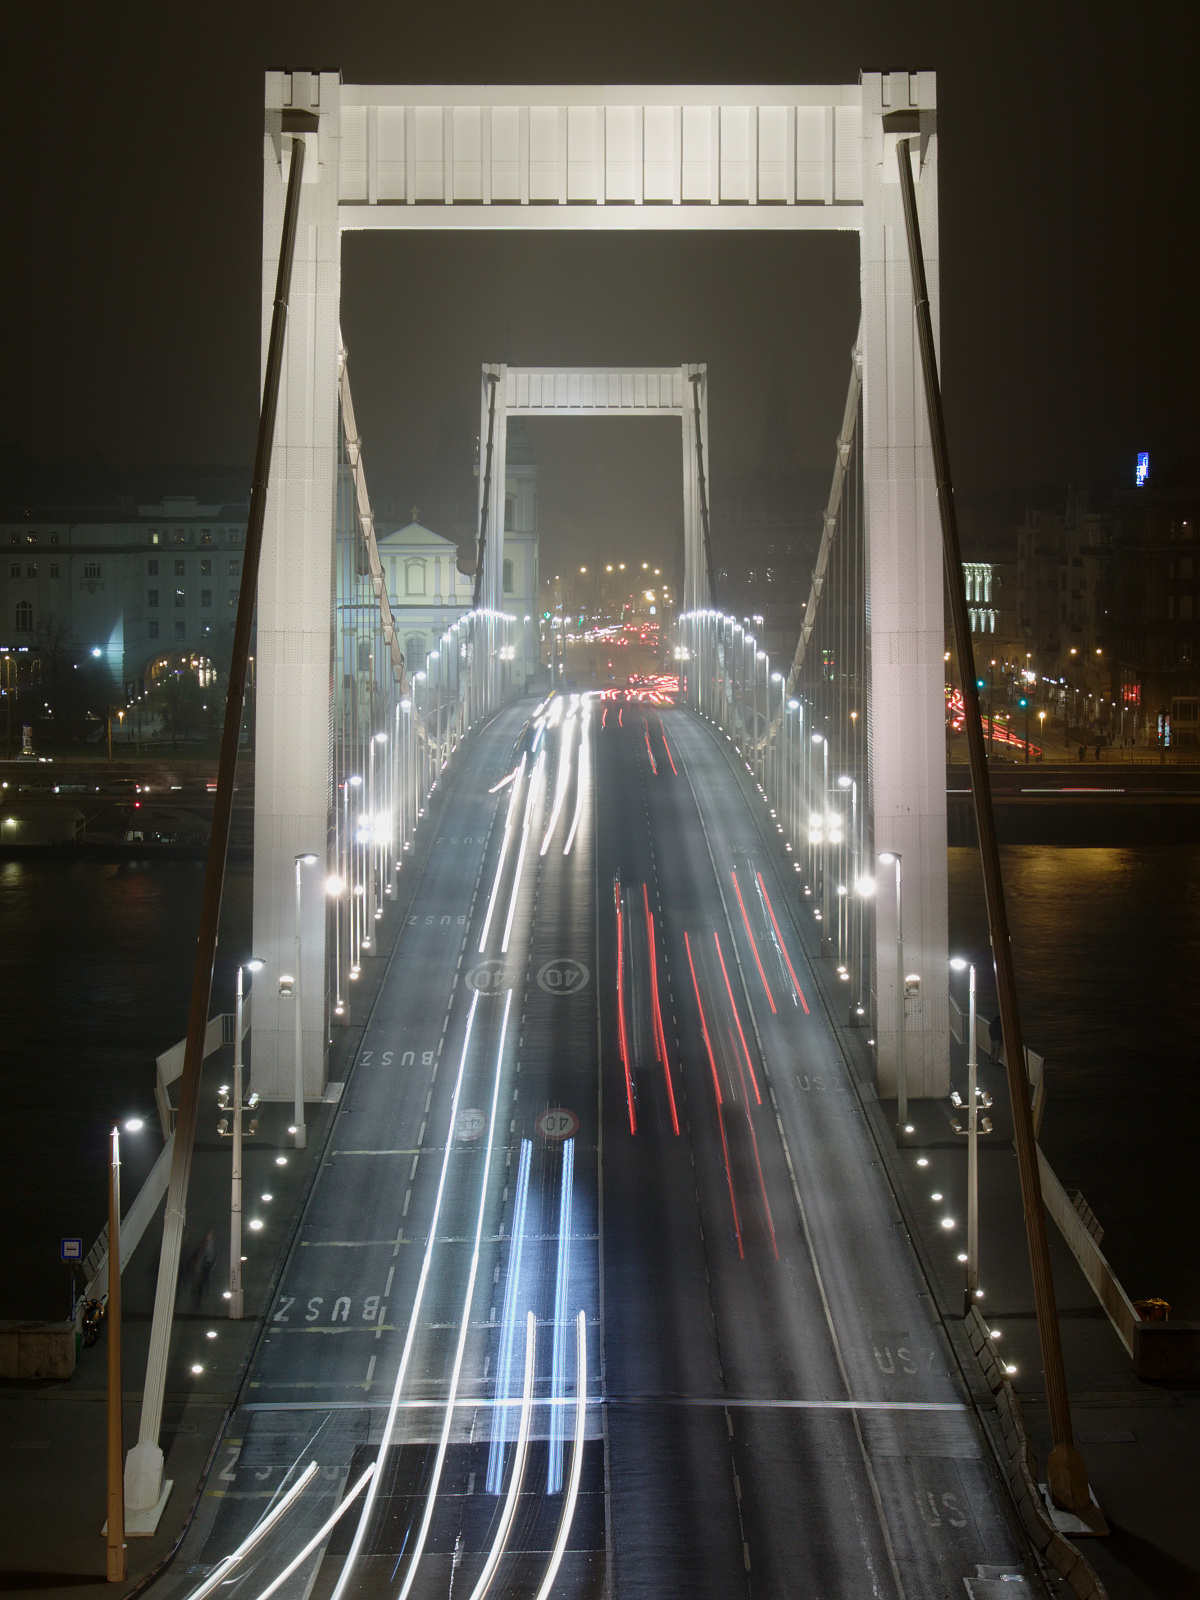 Erzsébet híd - Most Elżbiety (Podróże » Budapeszt » Budapeszt w nocy)